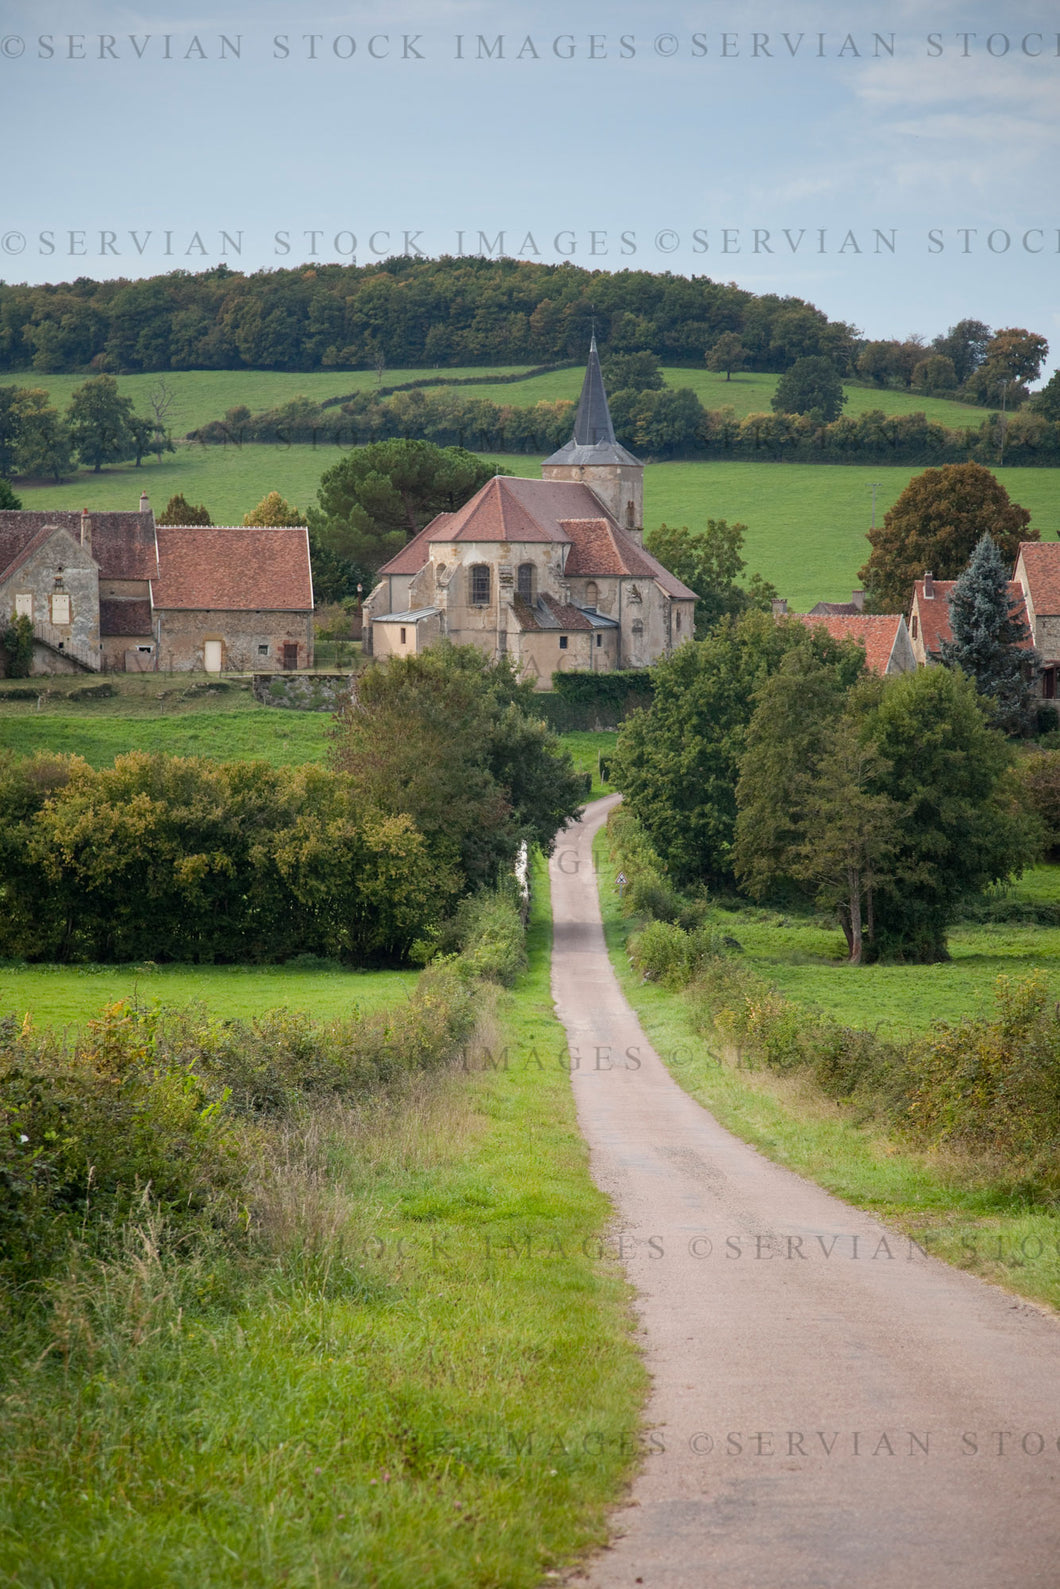 Historical building and landscape - rural village, France (Nick 0554)